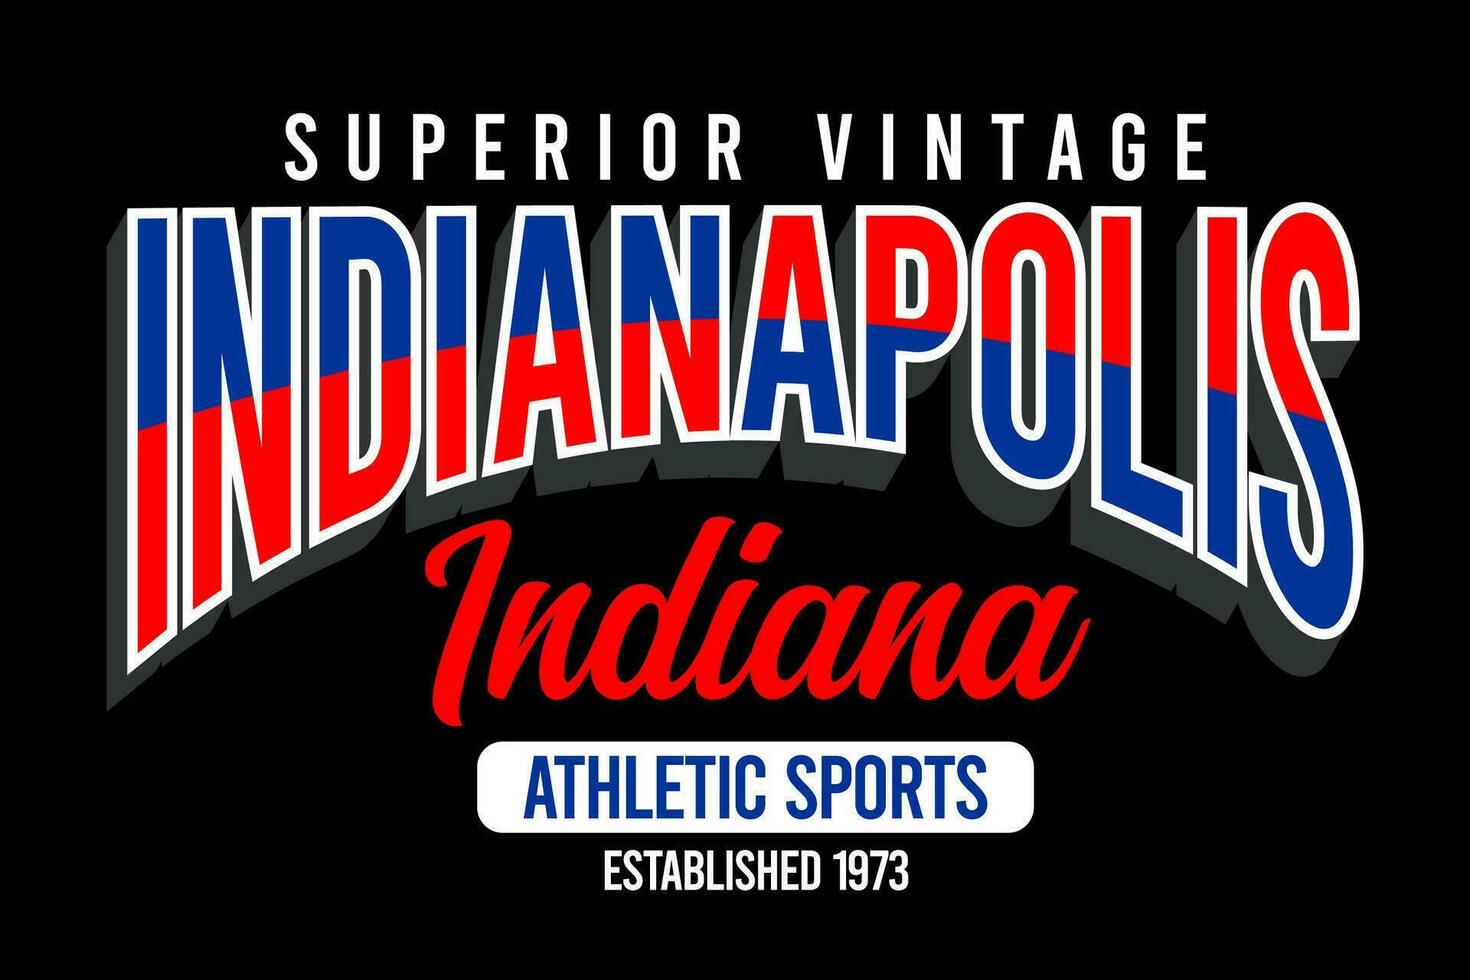 indianapolis Indiana Vintage ▾ Università, per Stampa su t camicie eccetera. vettore